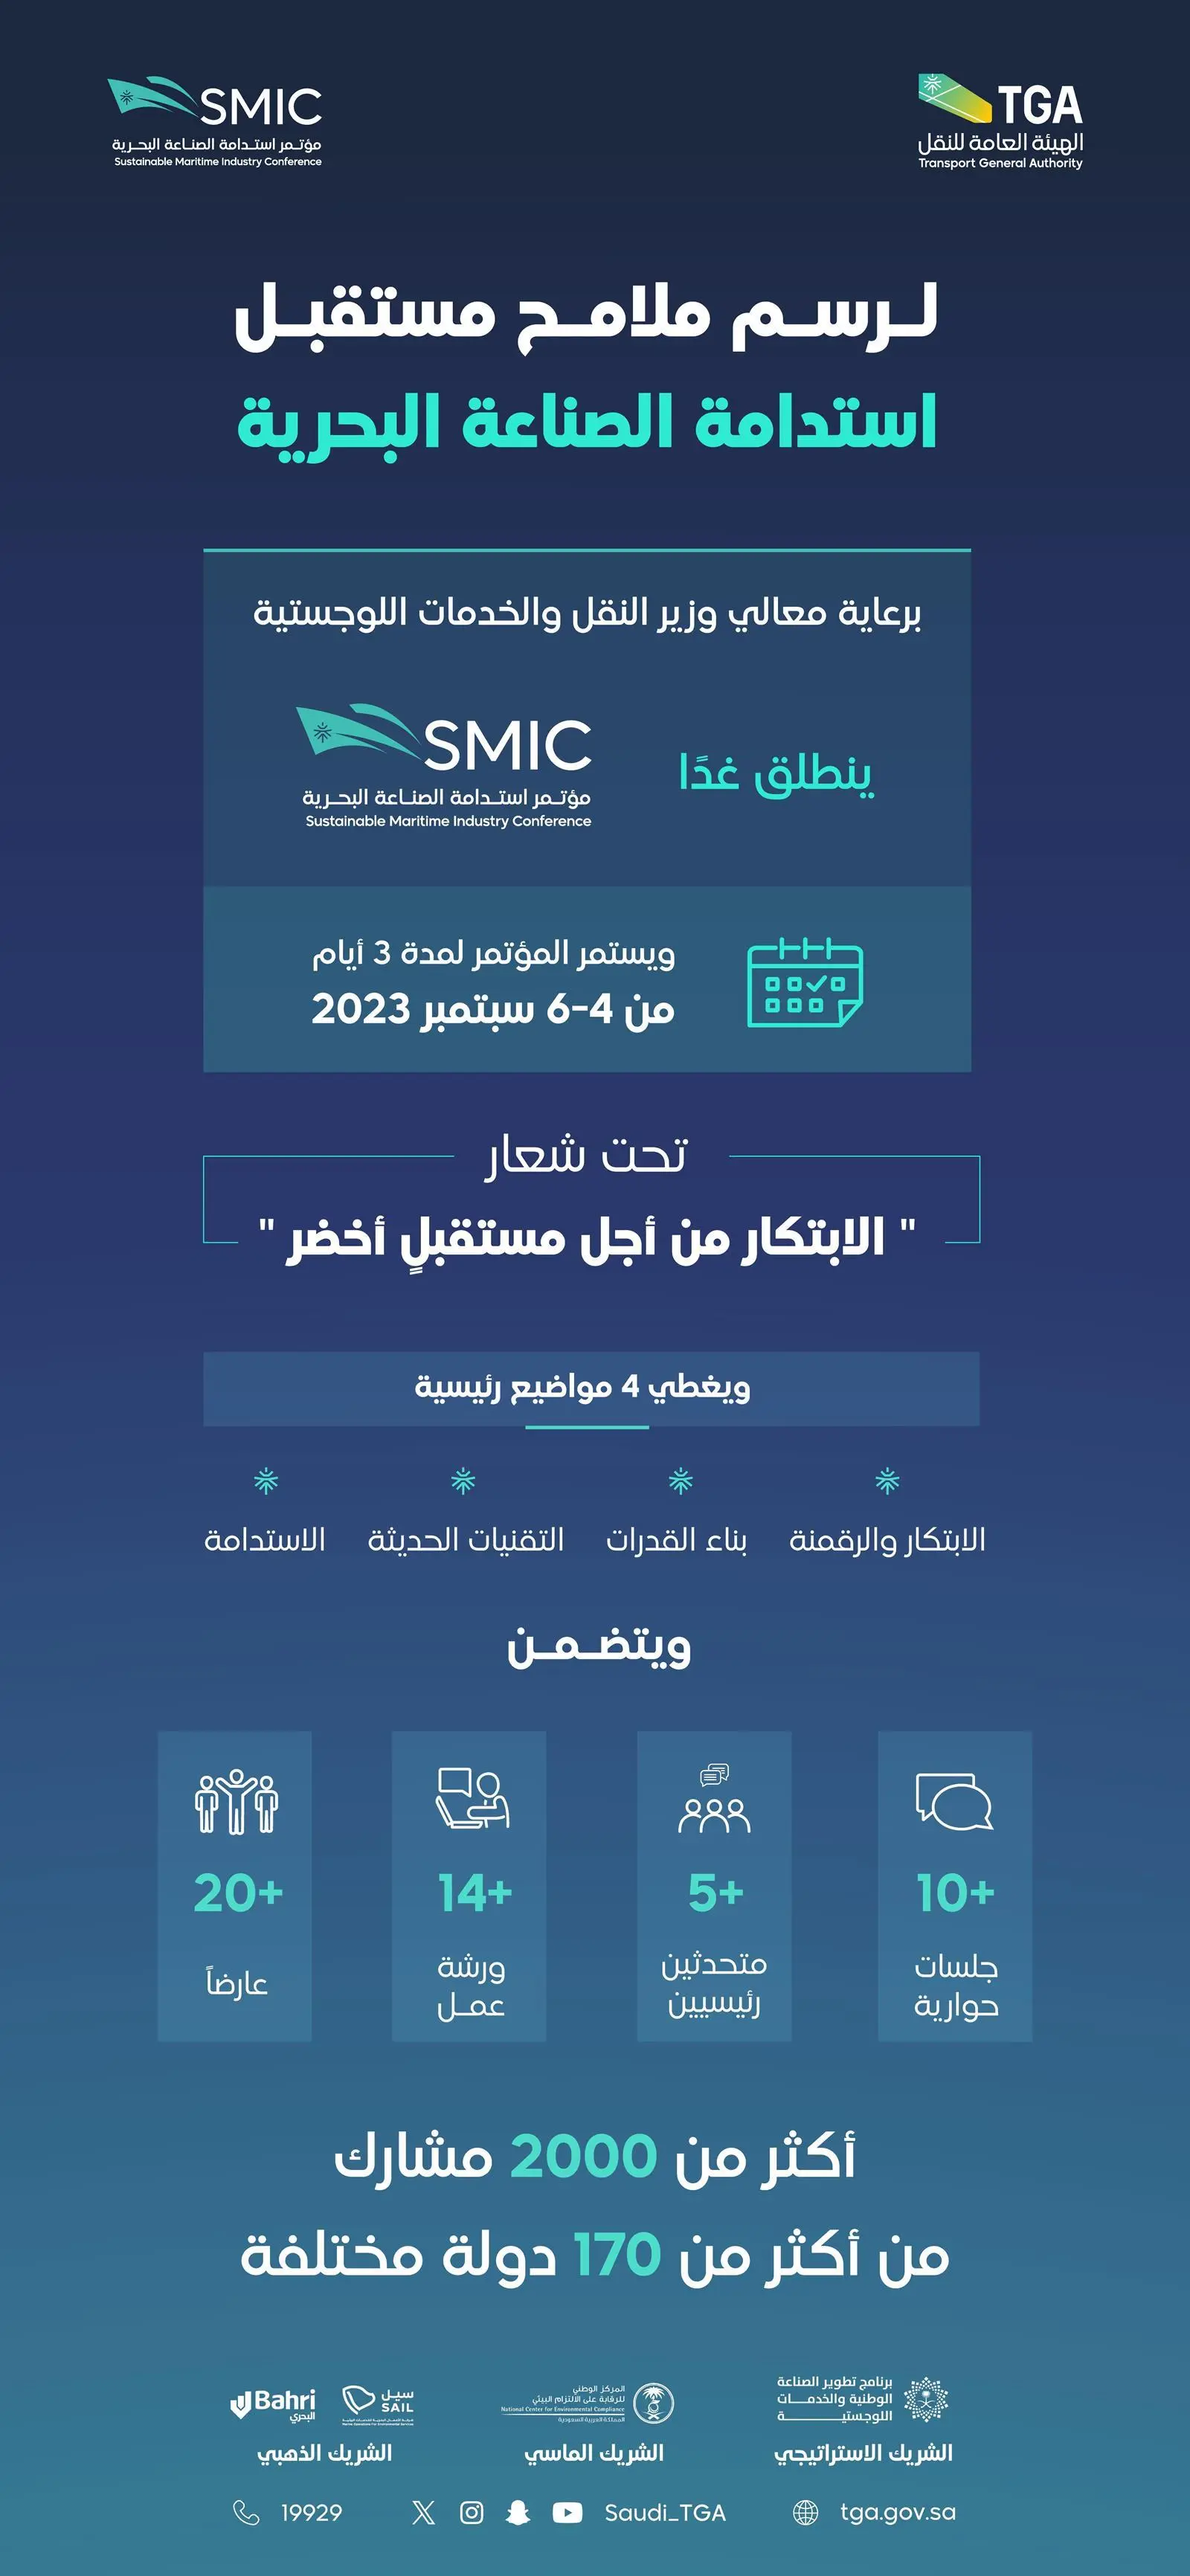 الهيئة العامة للنقل تنظم مؤتمر استدامة الصناعة البحرية (SMIC) في جدة